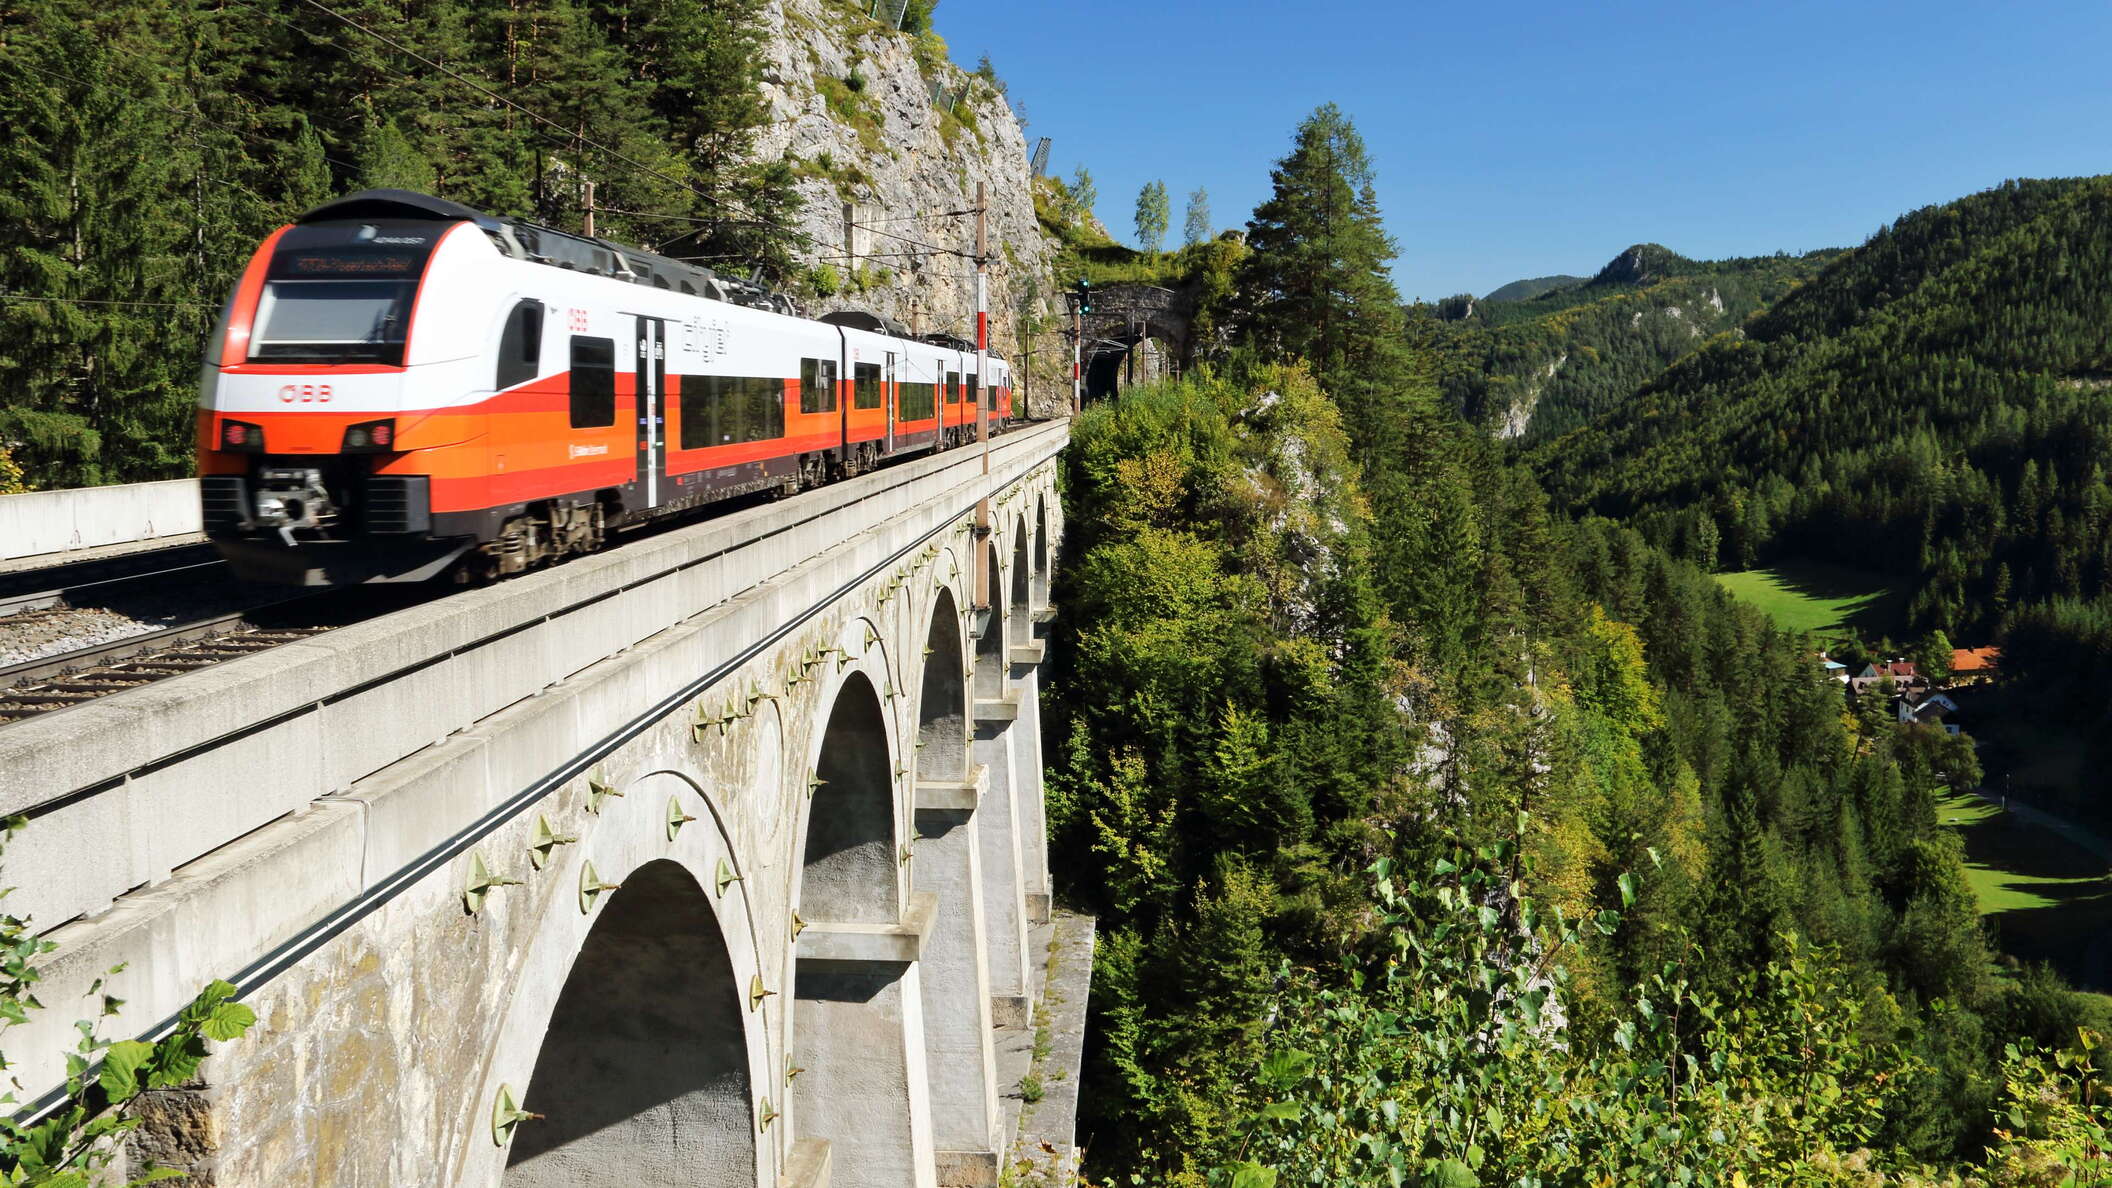 Semmering Railway | Krauselklause Viaduct